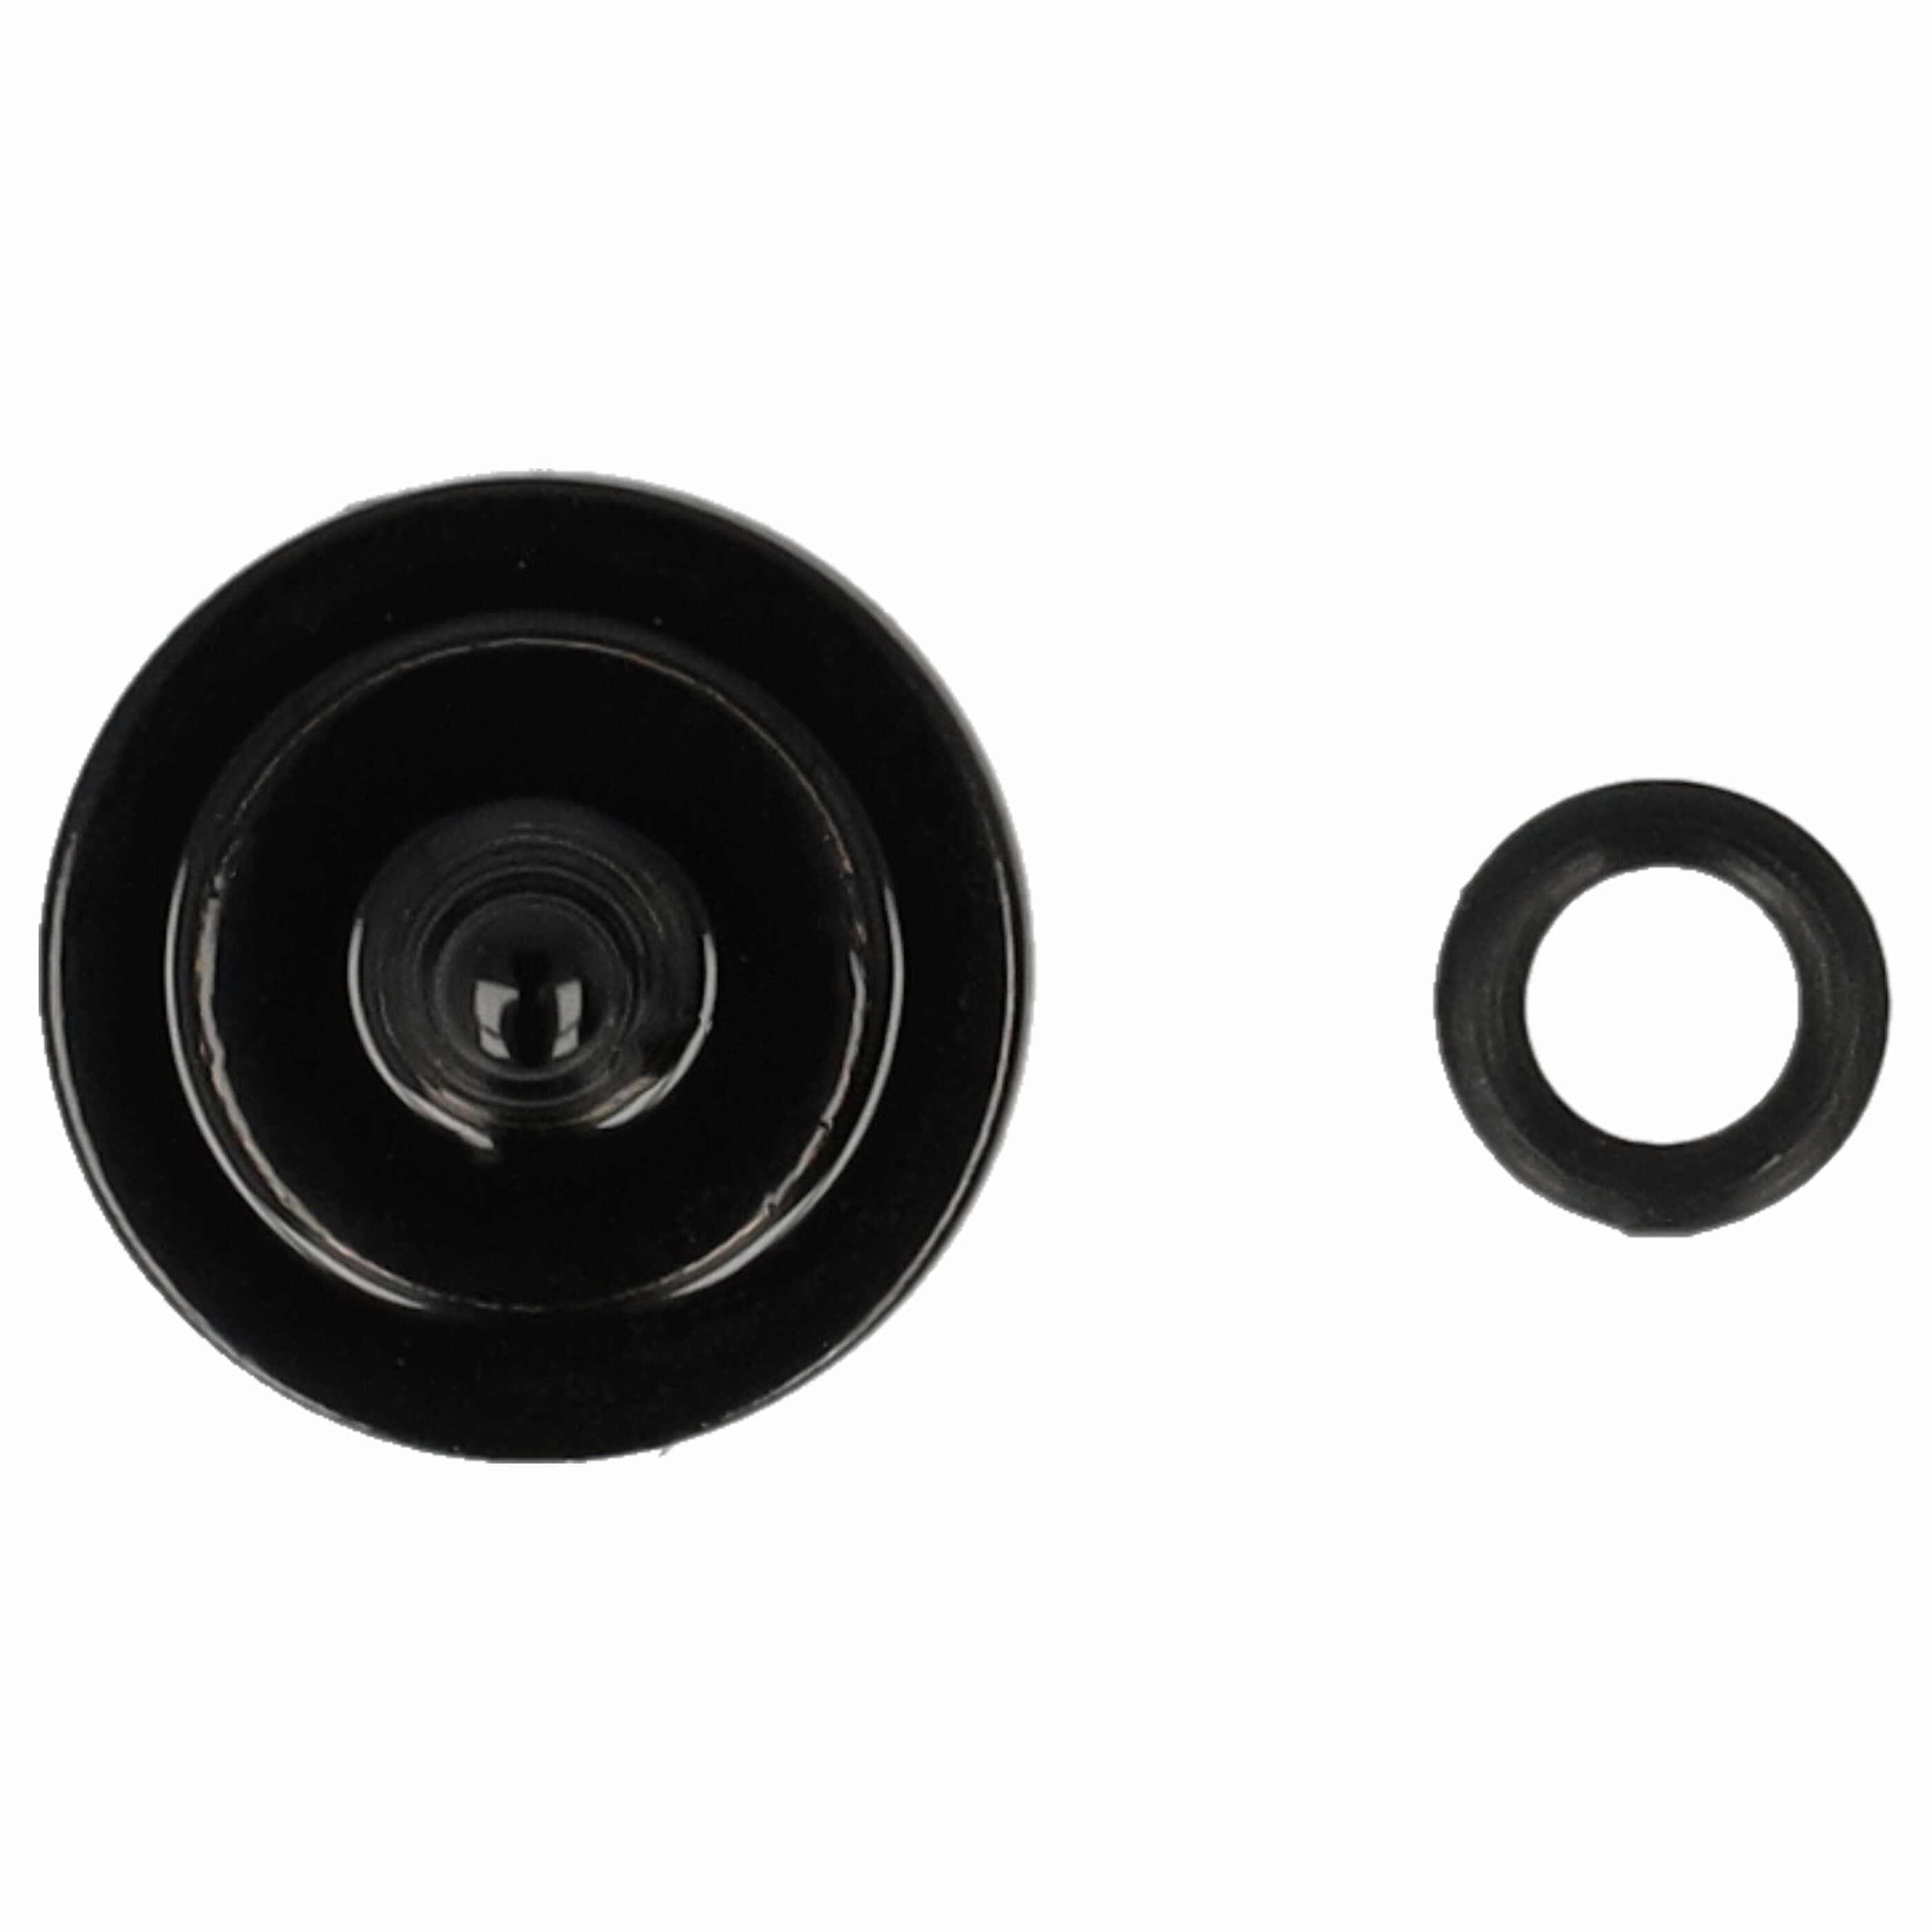 Przycisk spustu migawki do aparatu X-E1 Fujifilm - metal, czarny